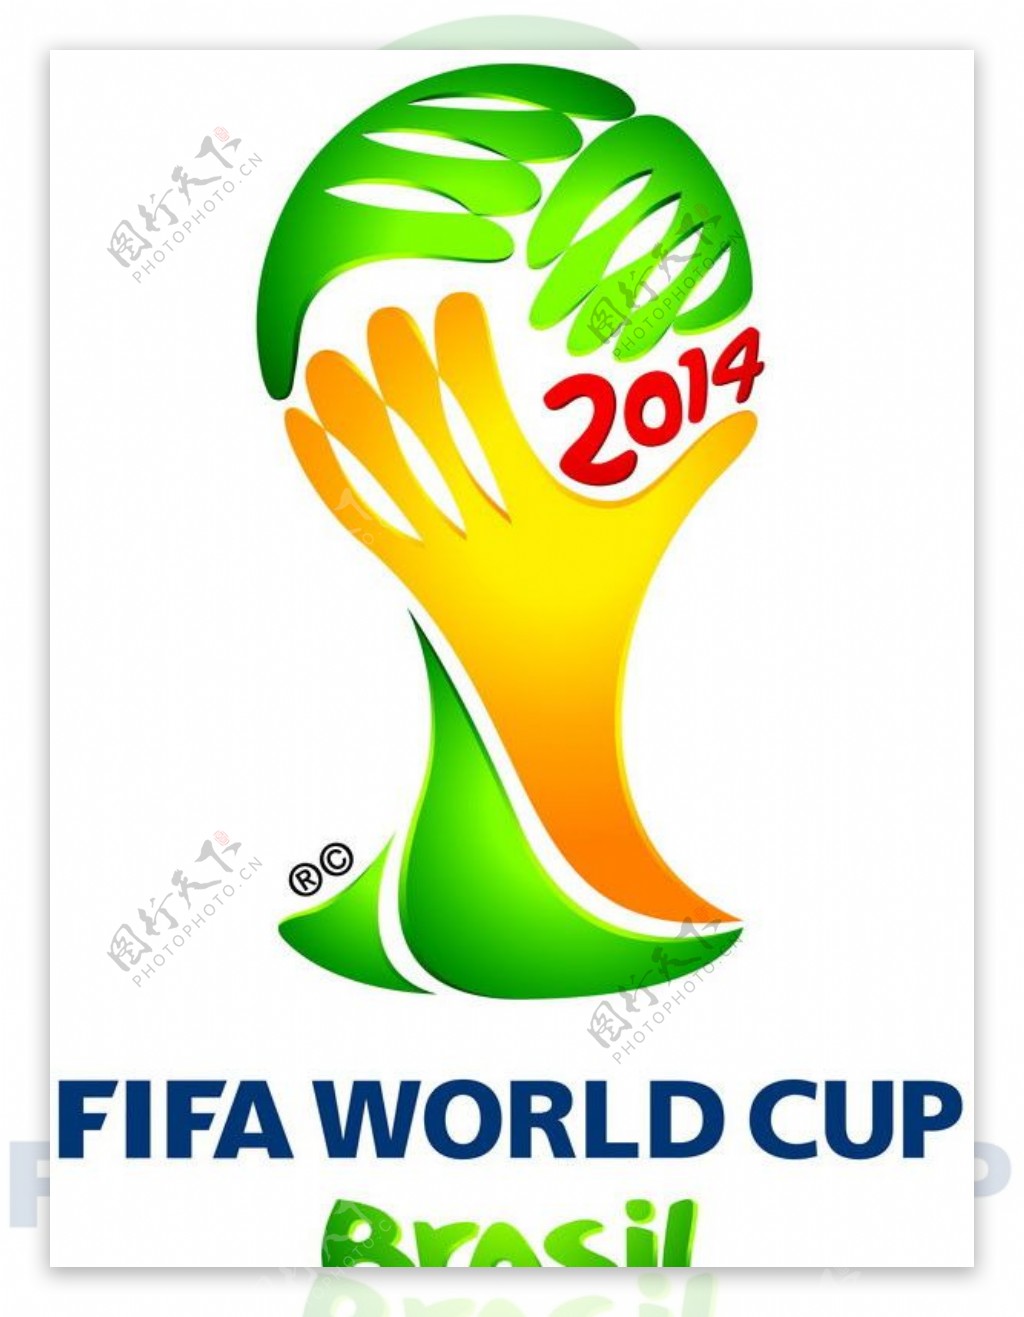 2014年巴西世界杯会徽图片